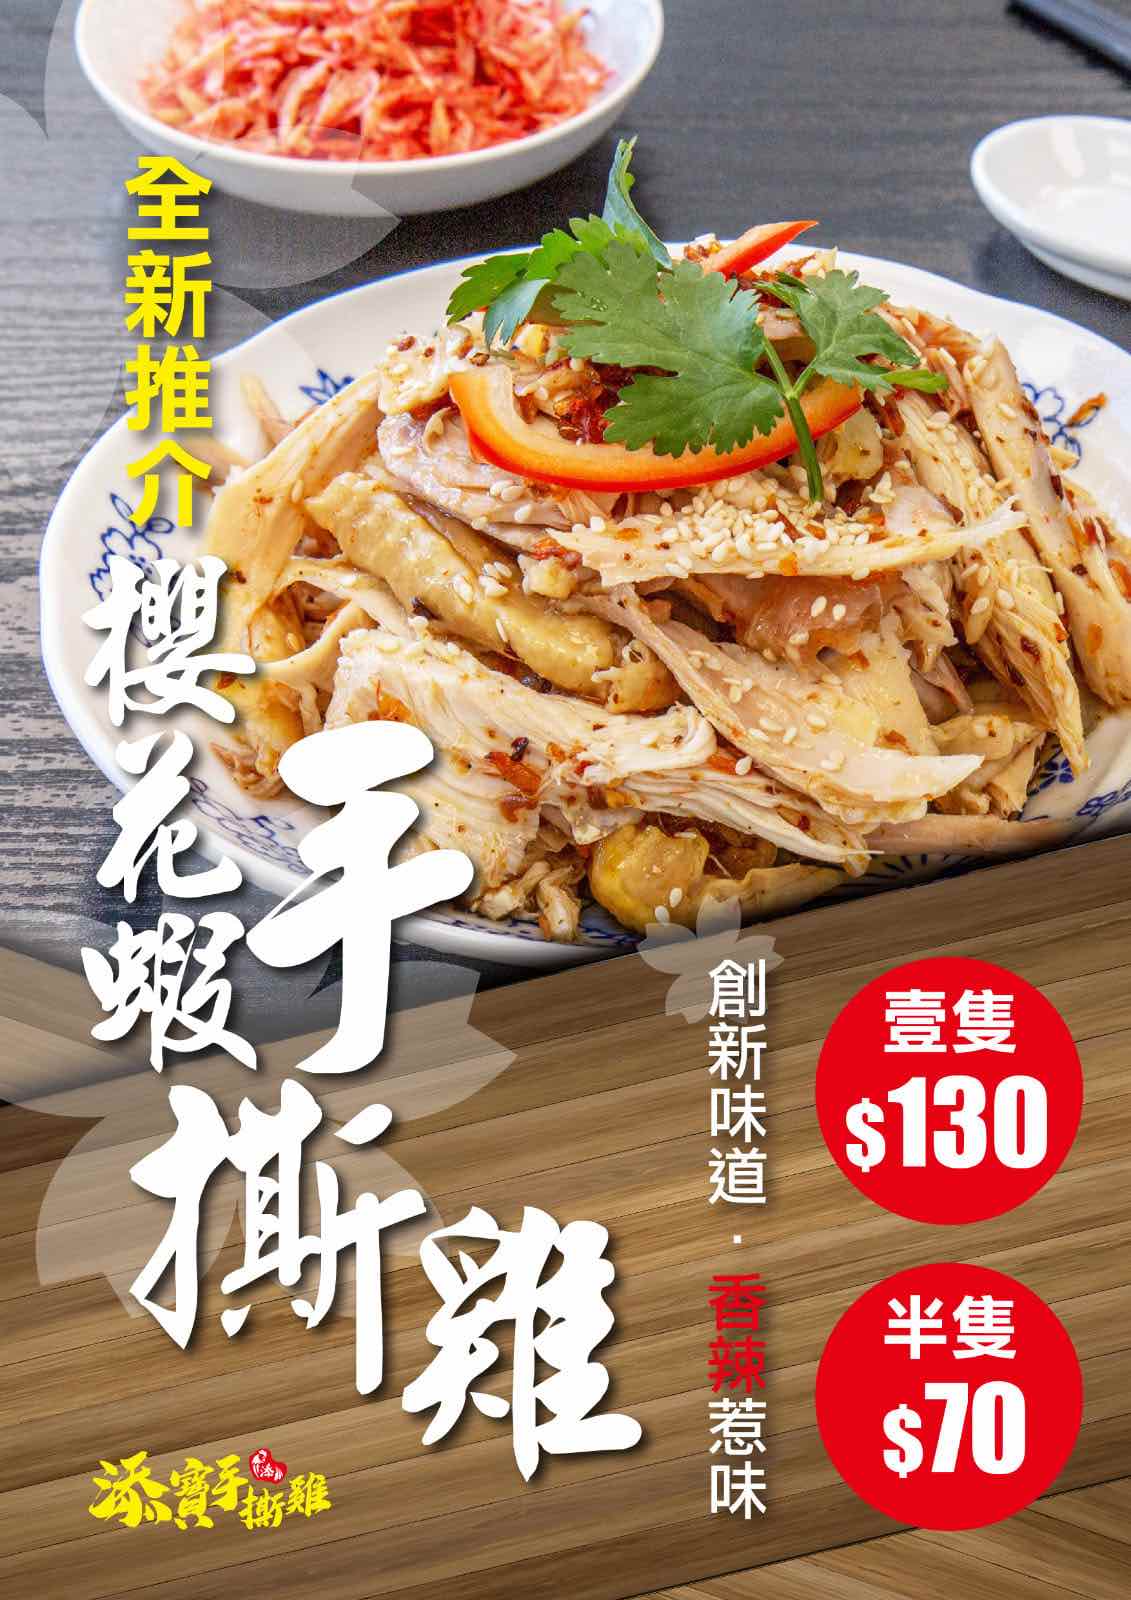 添寳手撕雞的特許經營香港區加盟店項目4